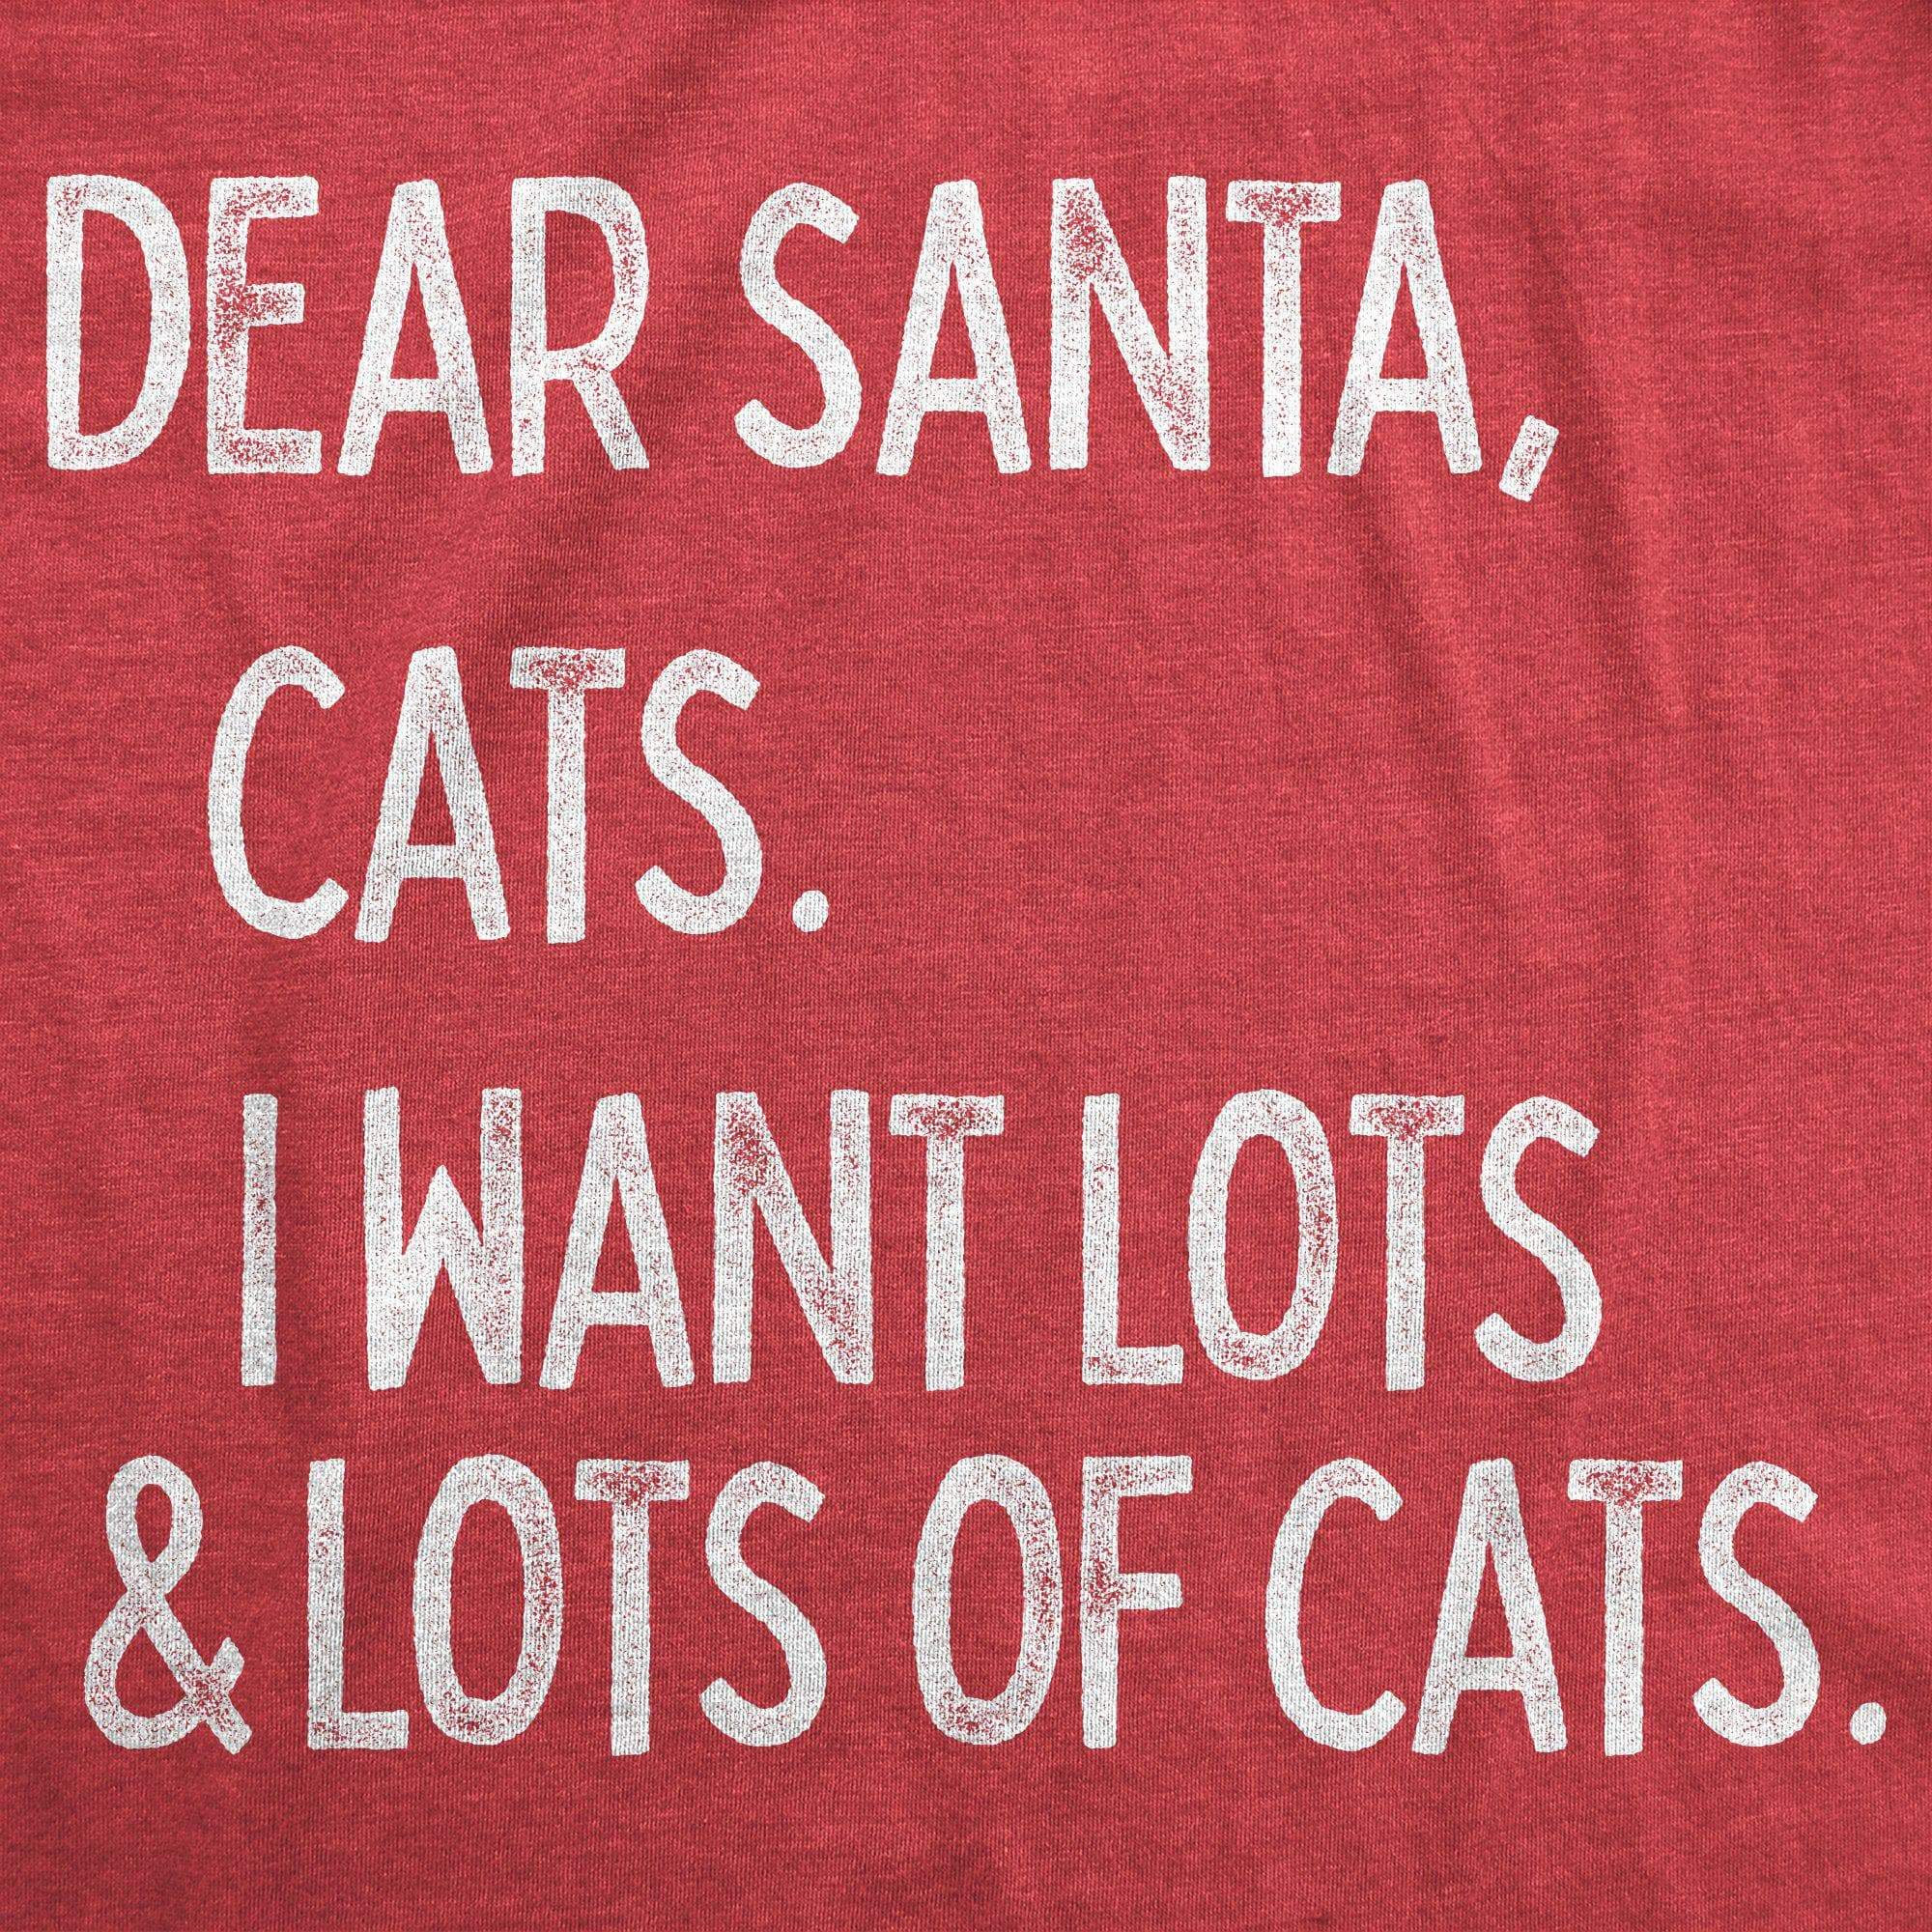 Dear Santa Cats I Want Lots Of Cats Men's Tshirt - Crazy Dog T-Shirts